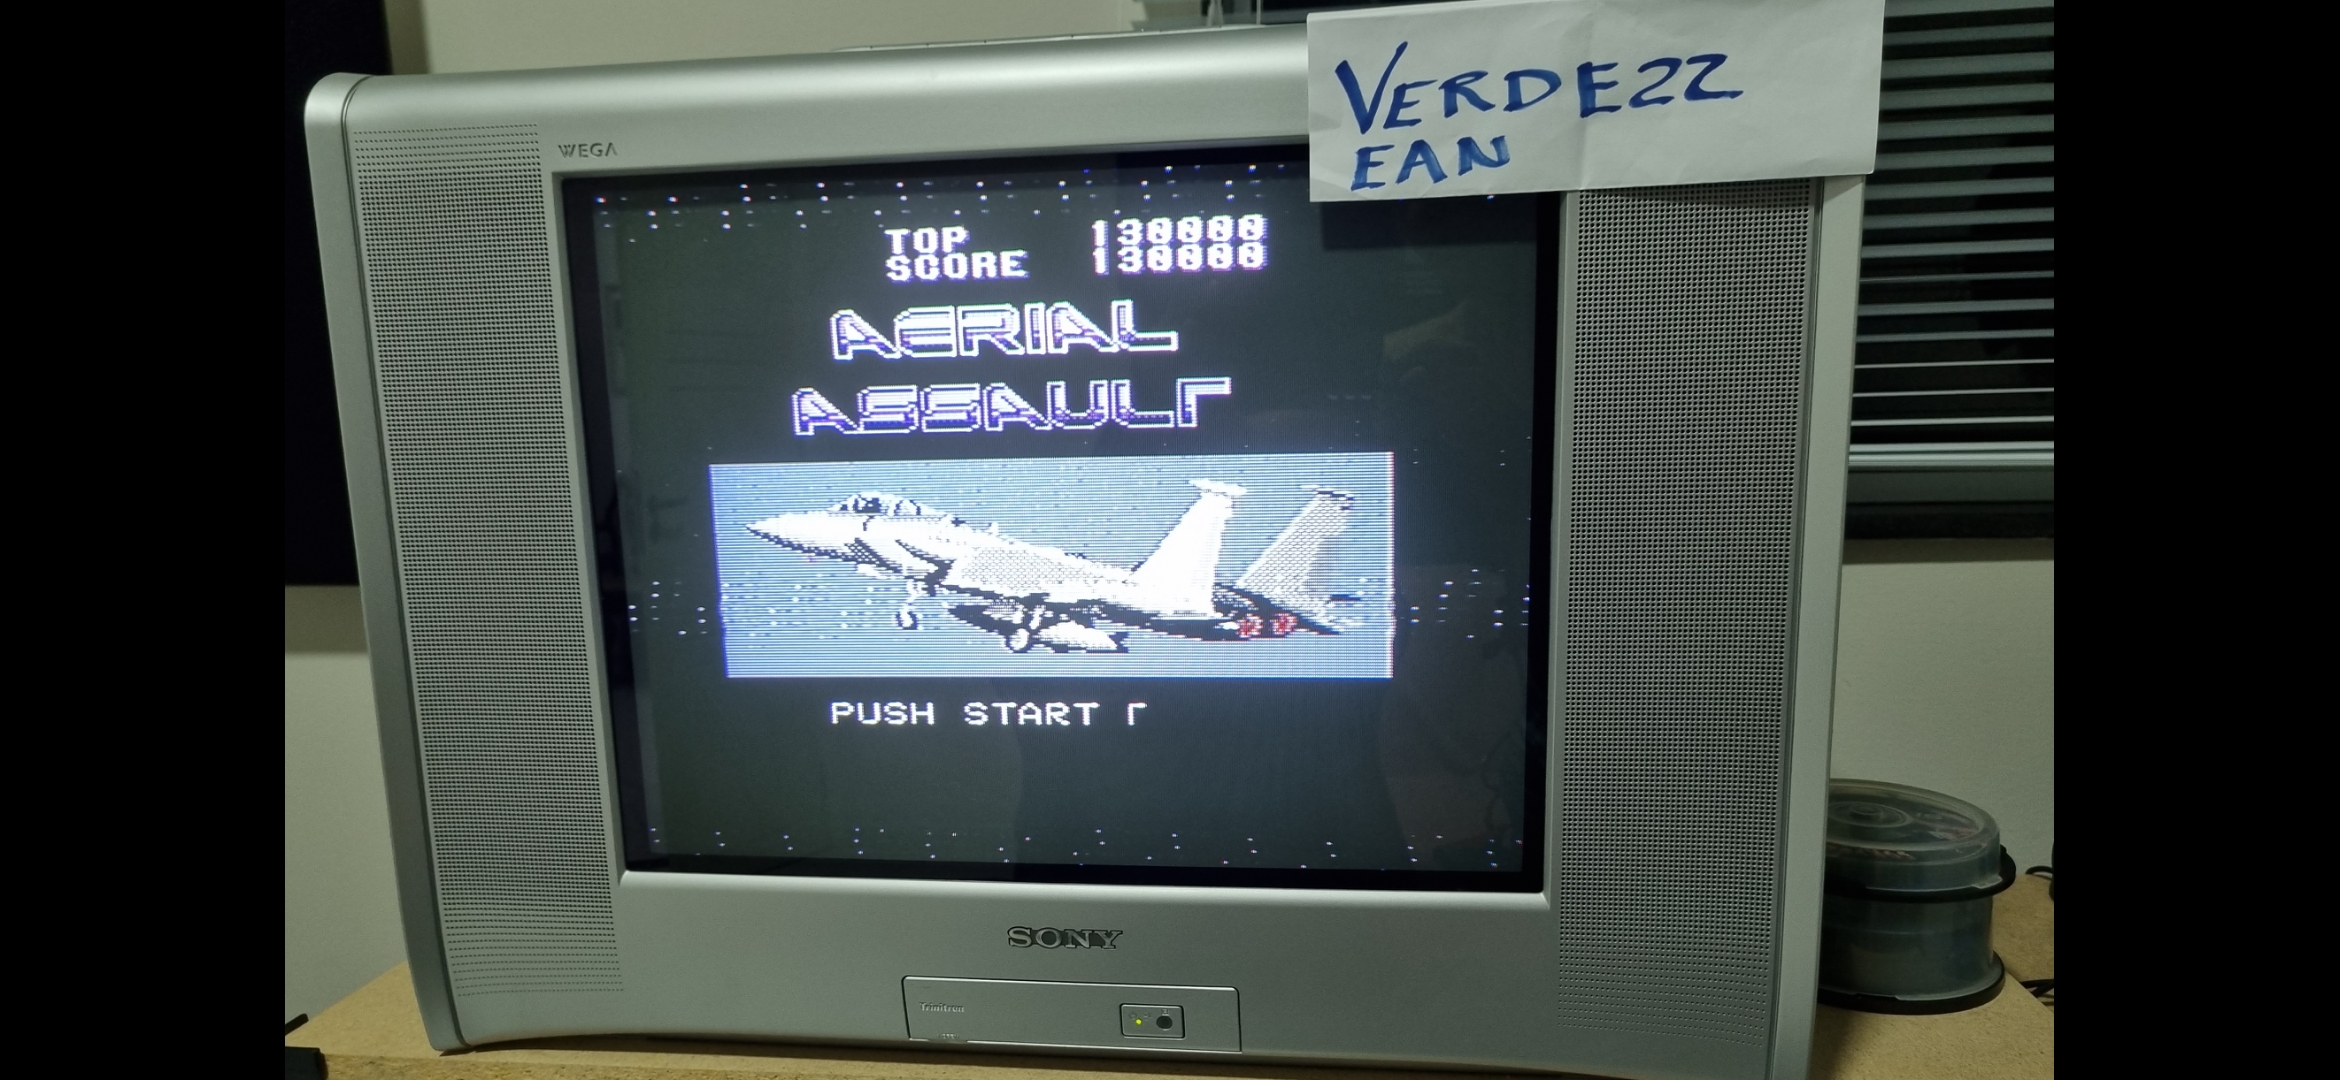 Verde22: Aerial Assault (Sega Master System) 130,000 points on 2022-07-28 19:13:53